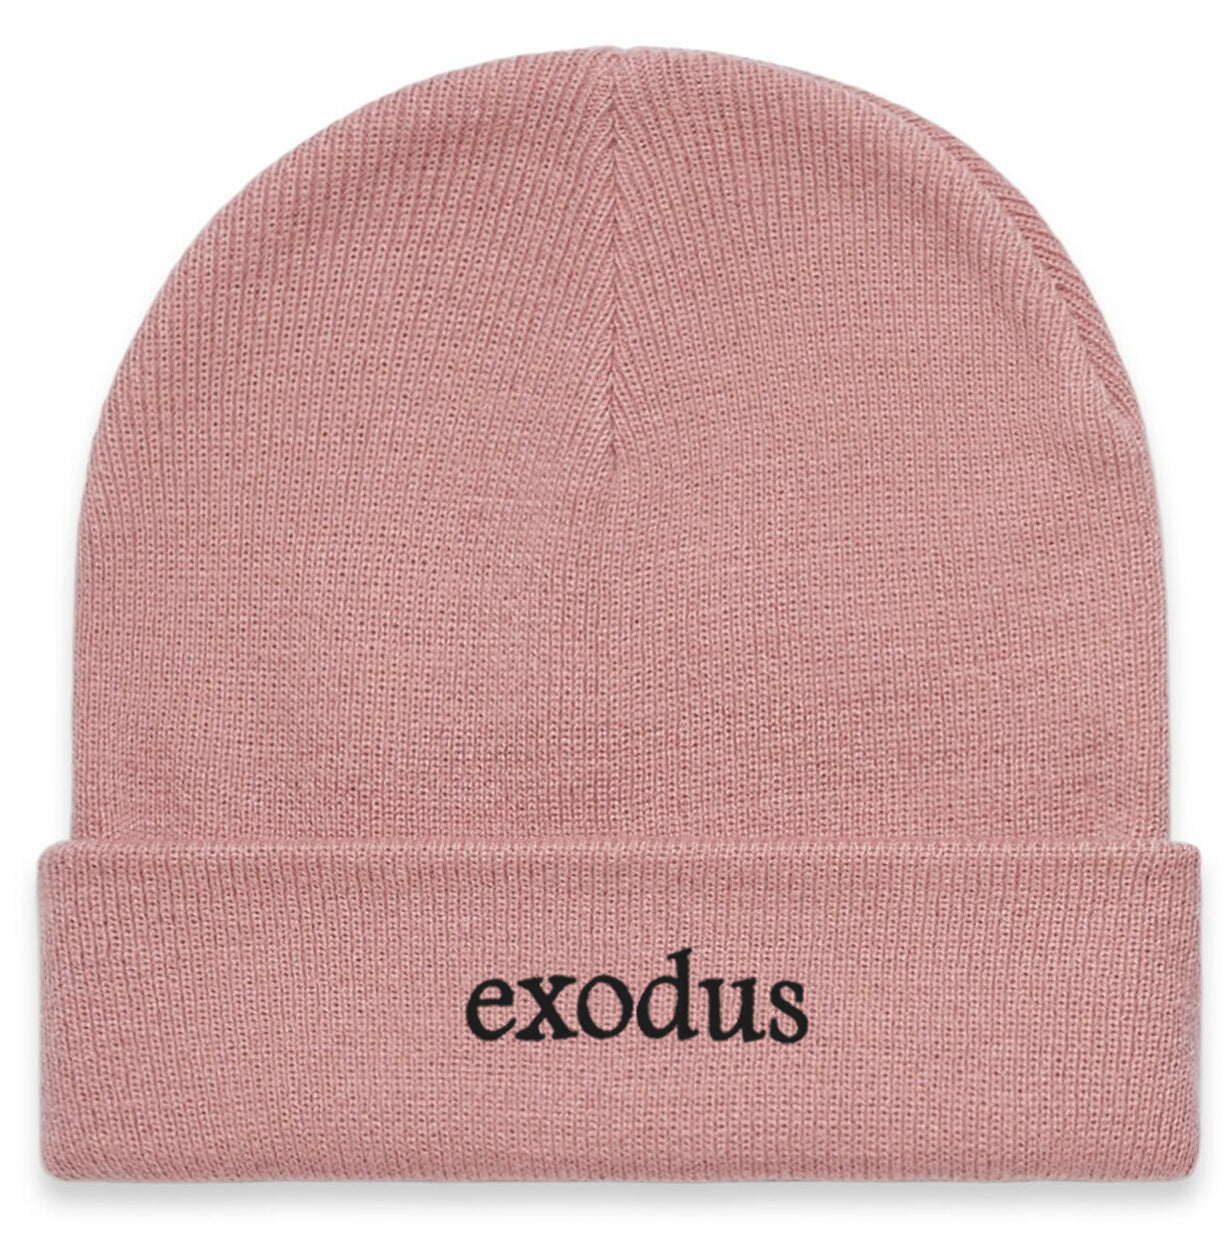 Exodus Clean Cuff Beanie - Rose